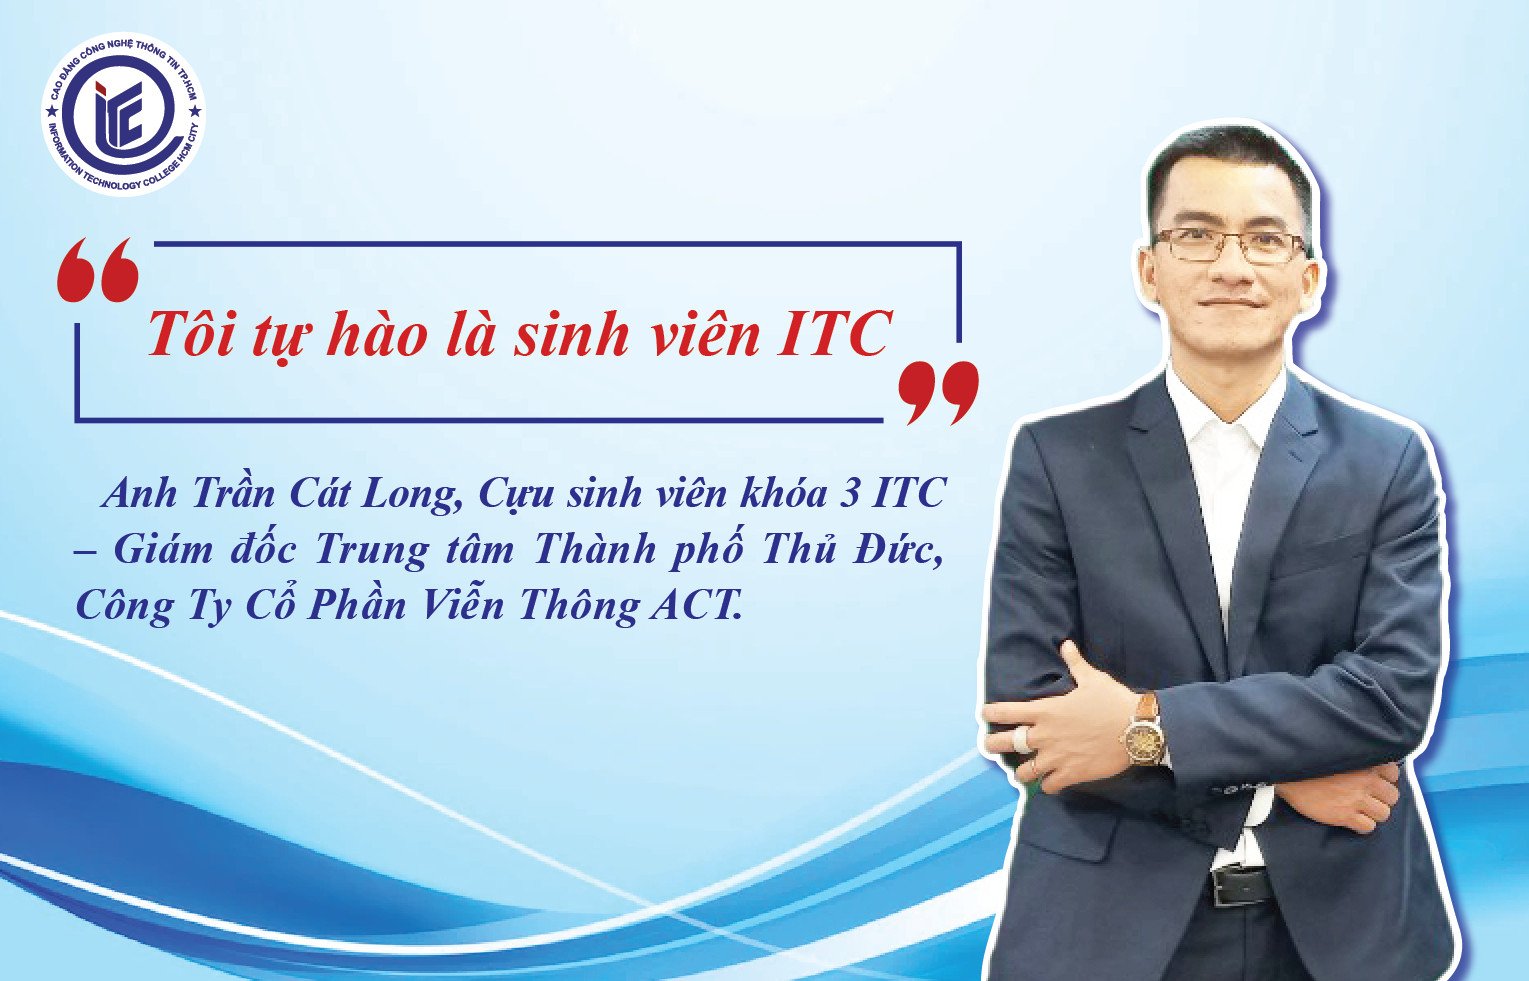 Gặp gỡ anh Trần Cát Long, Cựu sinh viên khóa 3 ITC - Giám đốc Trung tâm TP. Thủ Đức, Công Ty CP Viễn Thông ACT